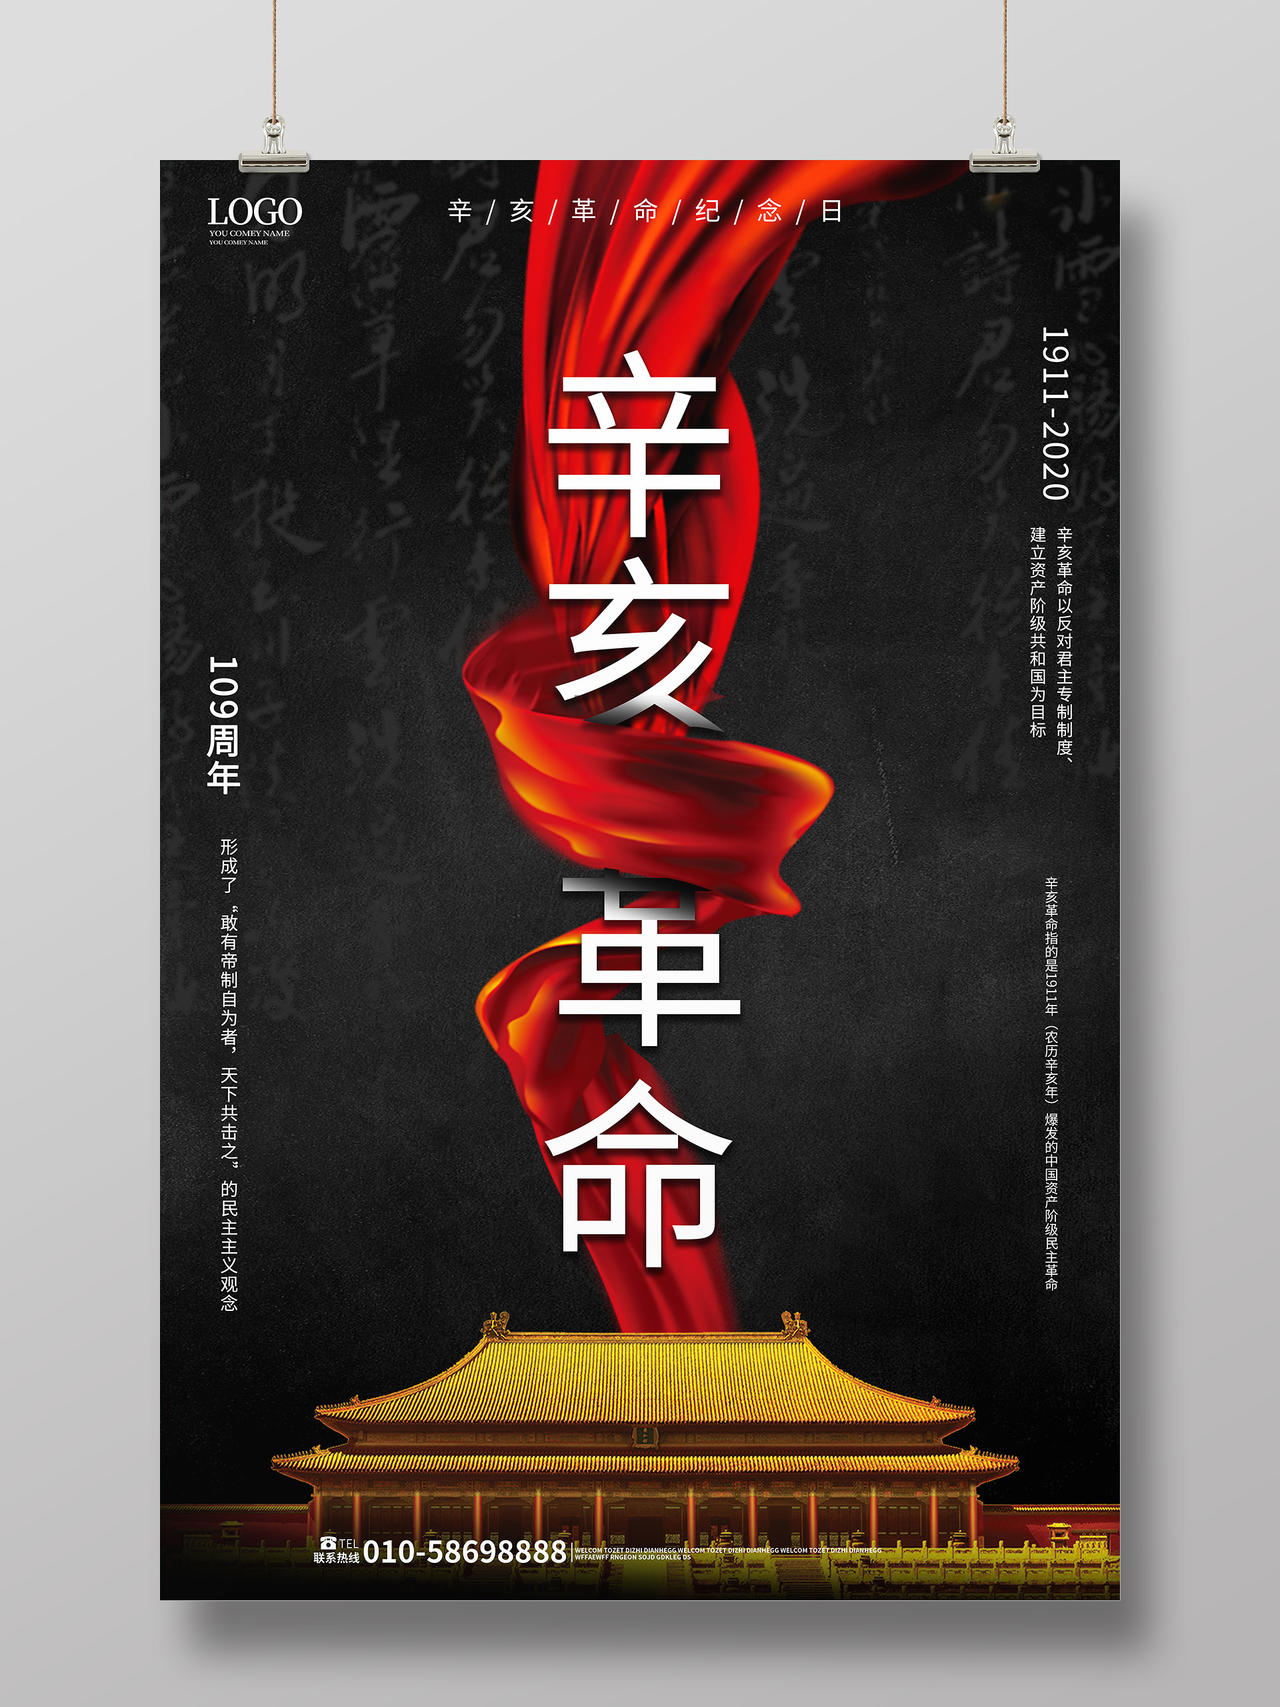 黑色简洁大气辛亥革命纪念日10月10日海报设计